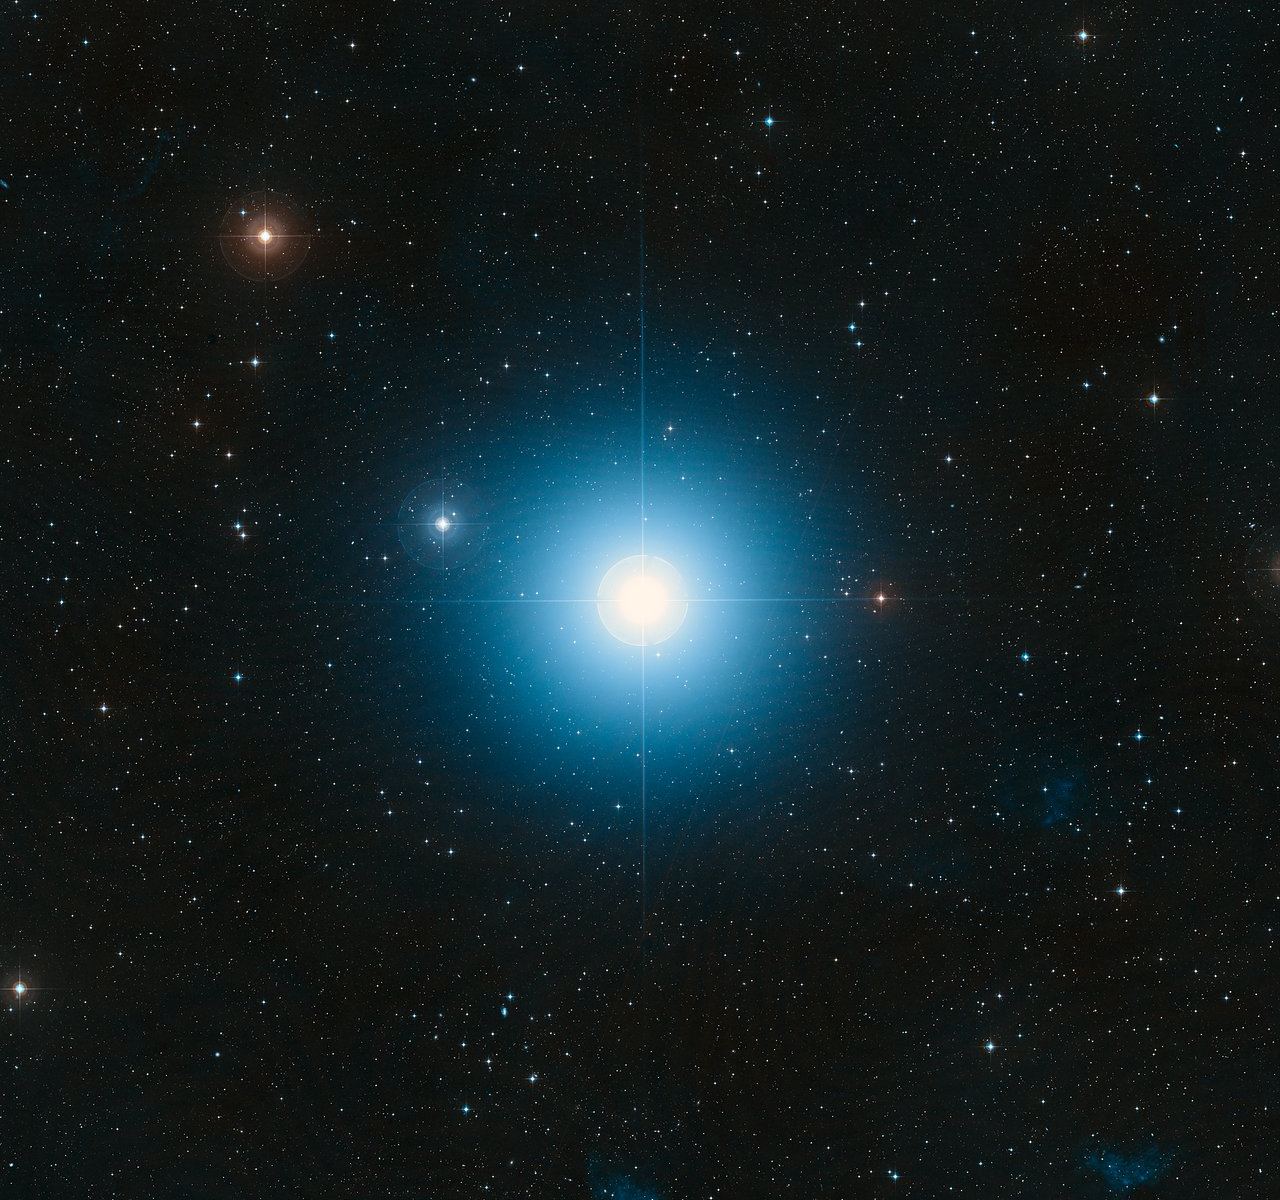 На этом снимке показана звезда Фомальгаут, вокруг которой вращается недавно открытая планета. Фомальгаут гораздо горячее нашего Солнца, в 15 раз ярче и находится на расстоянии 25 световых лет от Земли. Водород в ней сгорает с такой бешеной скоростью, что она сгорит всего за один миллиард лет, что составляет 10% продолжительности жизни нашей звезды. Поле зрения составляет 2,7 x 2,9 градуса.